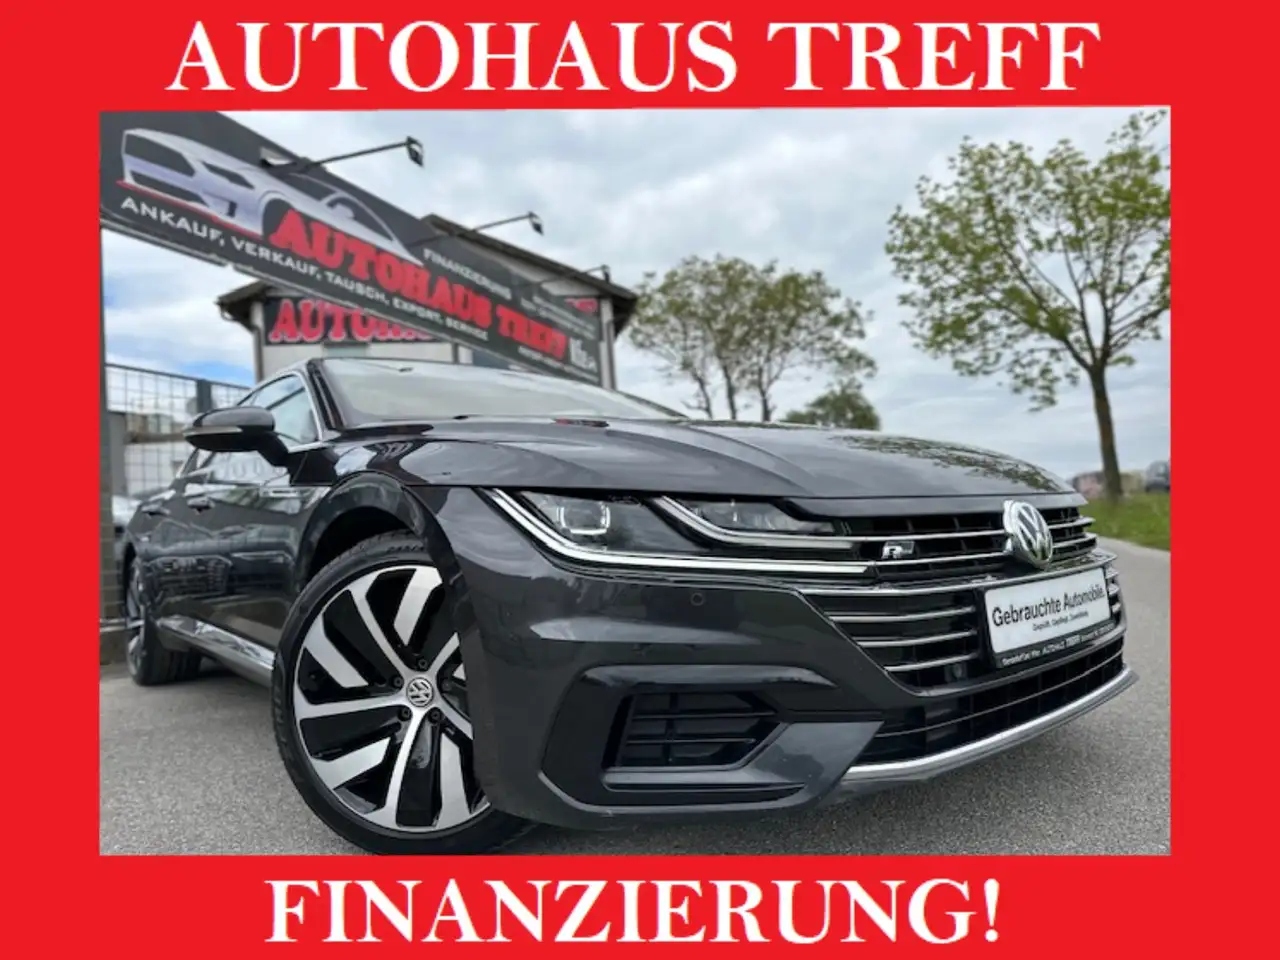 Volkswagen Arteon Berline in Grijs tweedehands in Gerasdorf bei Wien voor € 24.500,-